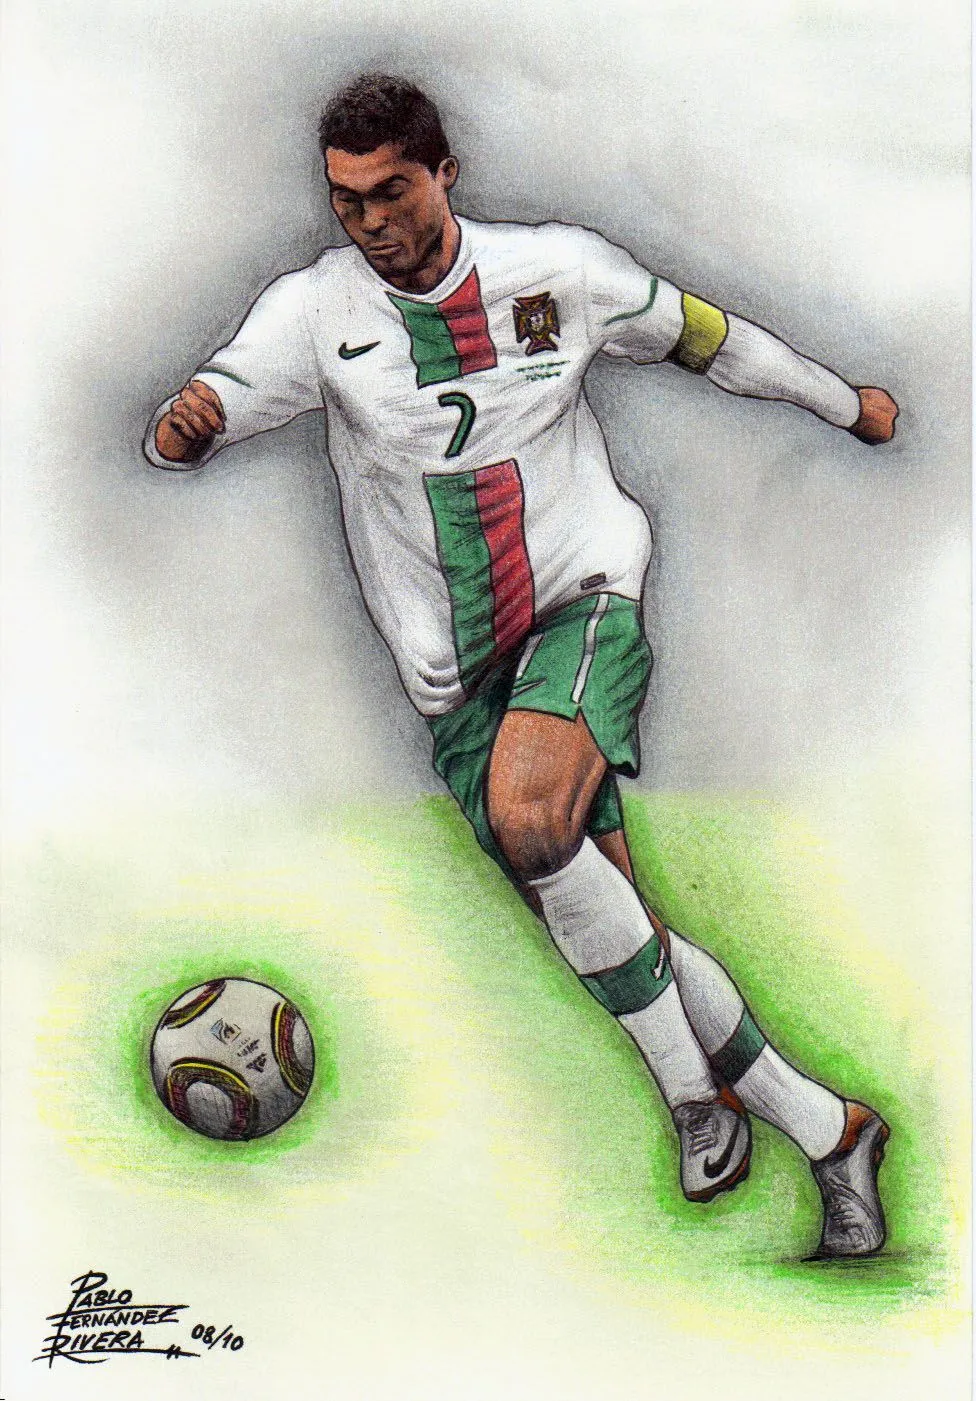 Aqui tenemos un dibujo del jugador de fútbol, Cristiano Ronaldo con ...